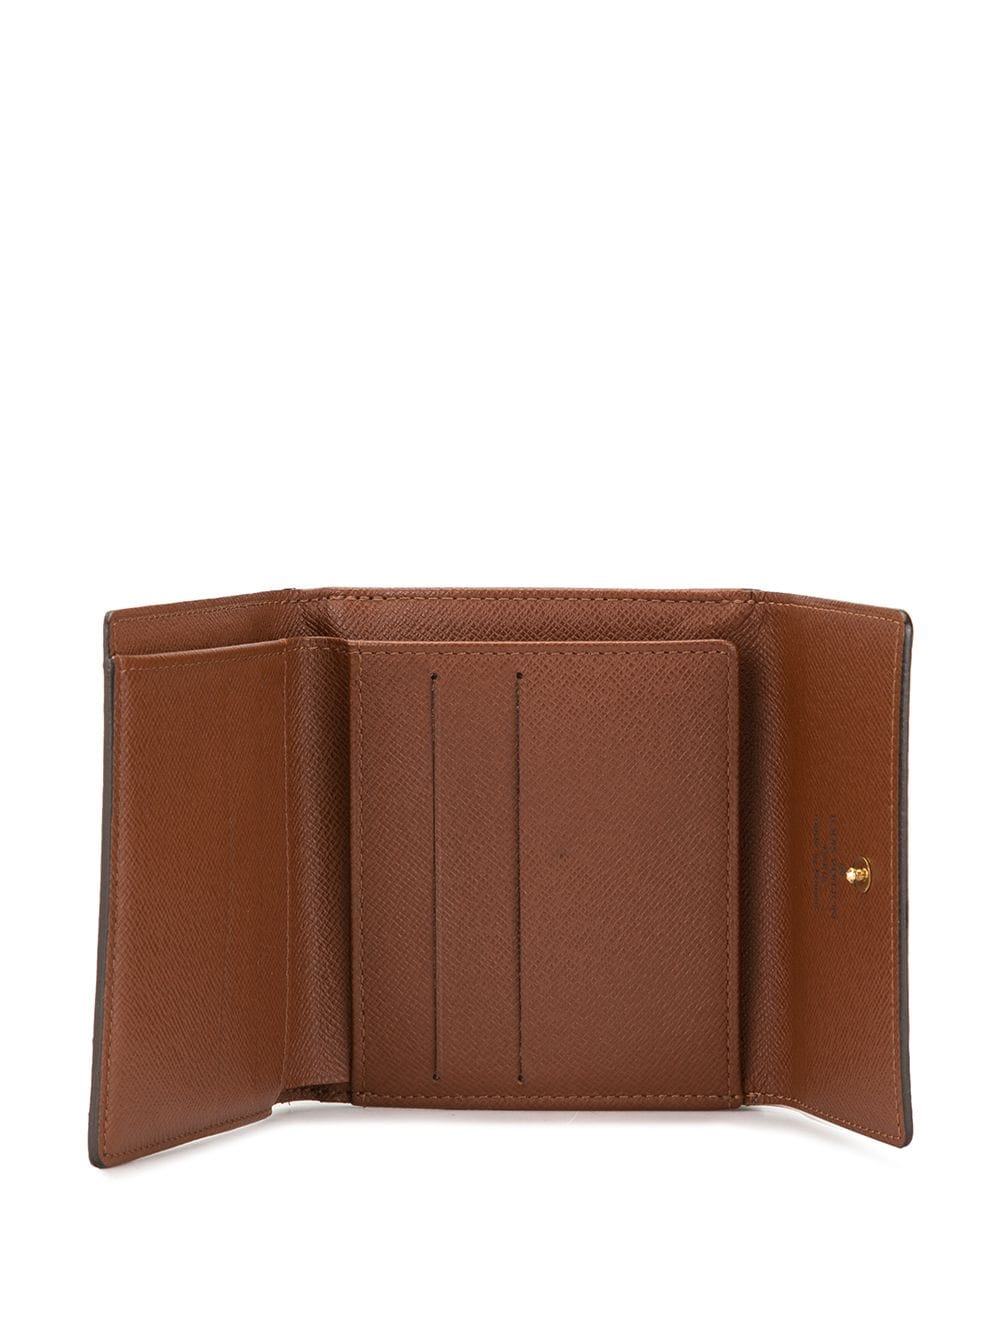 Louis Vuitton Brown Leather Monogram Flap Snap Closure Wallet